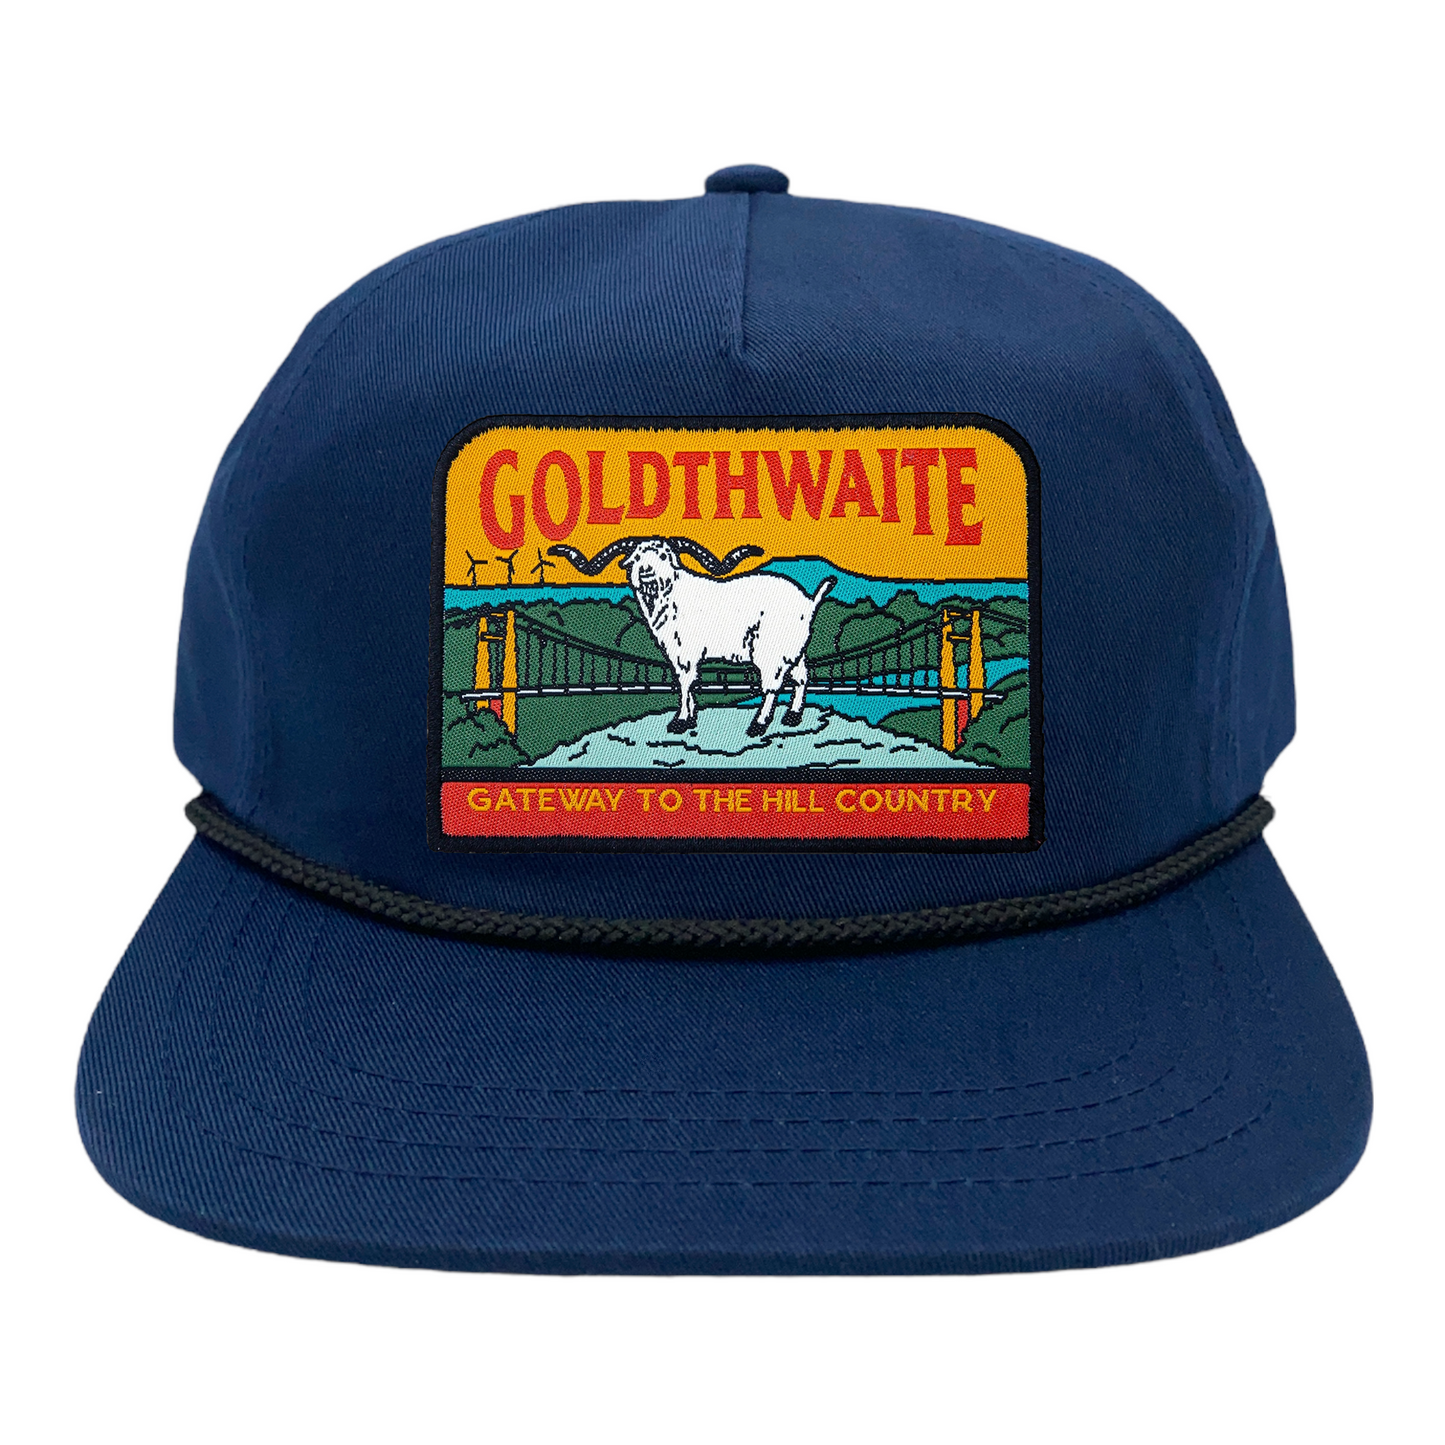 Goldthwaite, TX Snapback